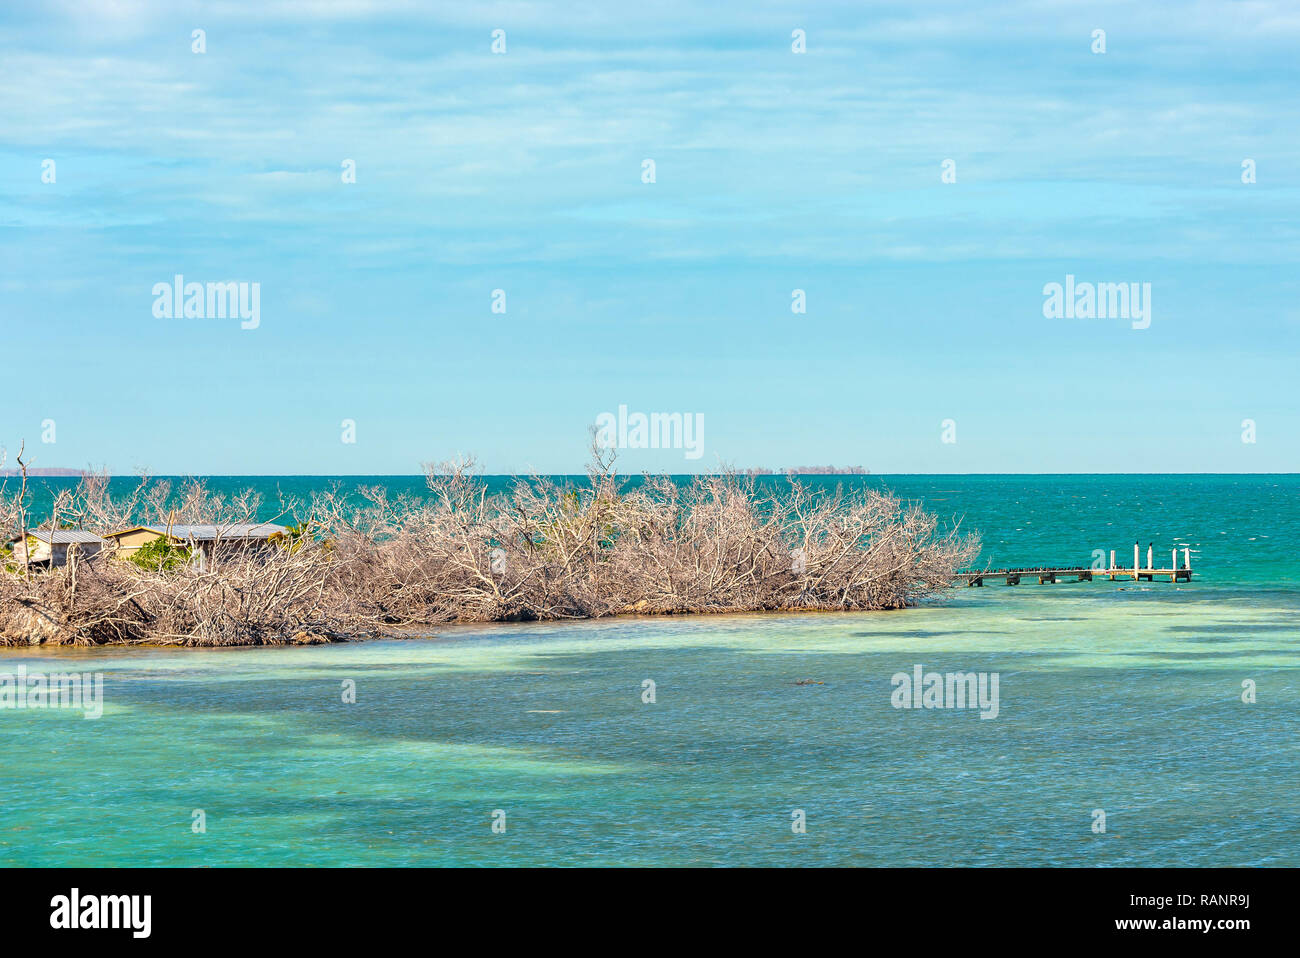 Poco denaro chiave, una piccola isola deserta circondate da bellissime crystal clear e acqua del mare turchese. Florida Keys. Foto Stock